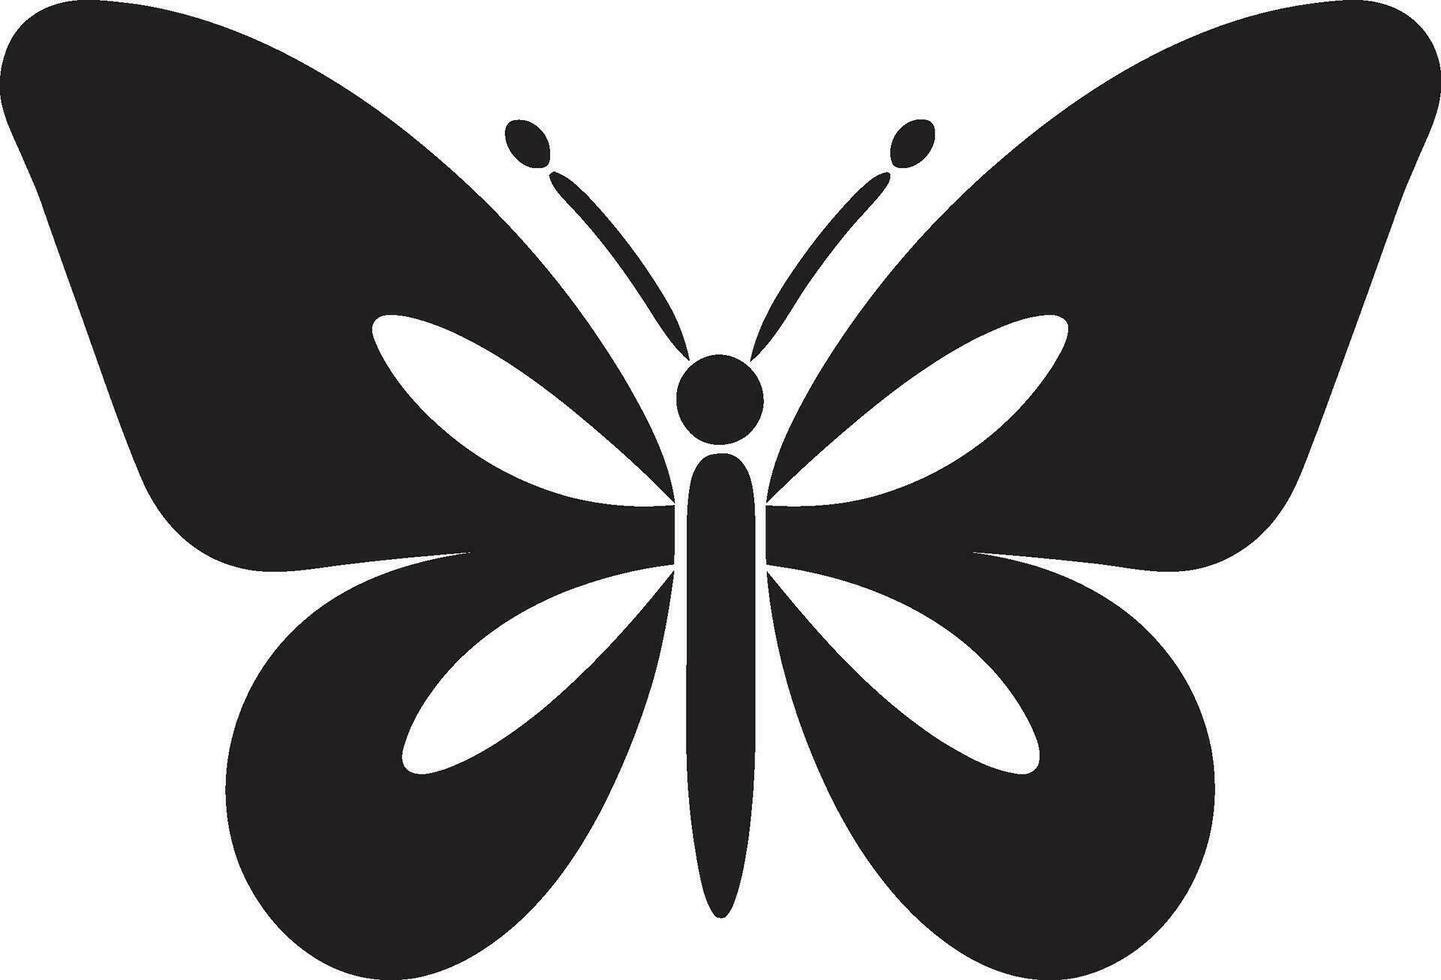 tillverkad i noir fjäril emblem i svart skulpterad skönhet svart fjäril symbol vektor